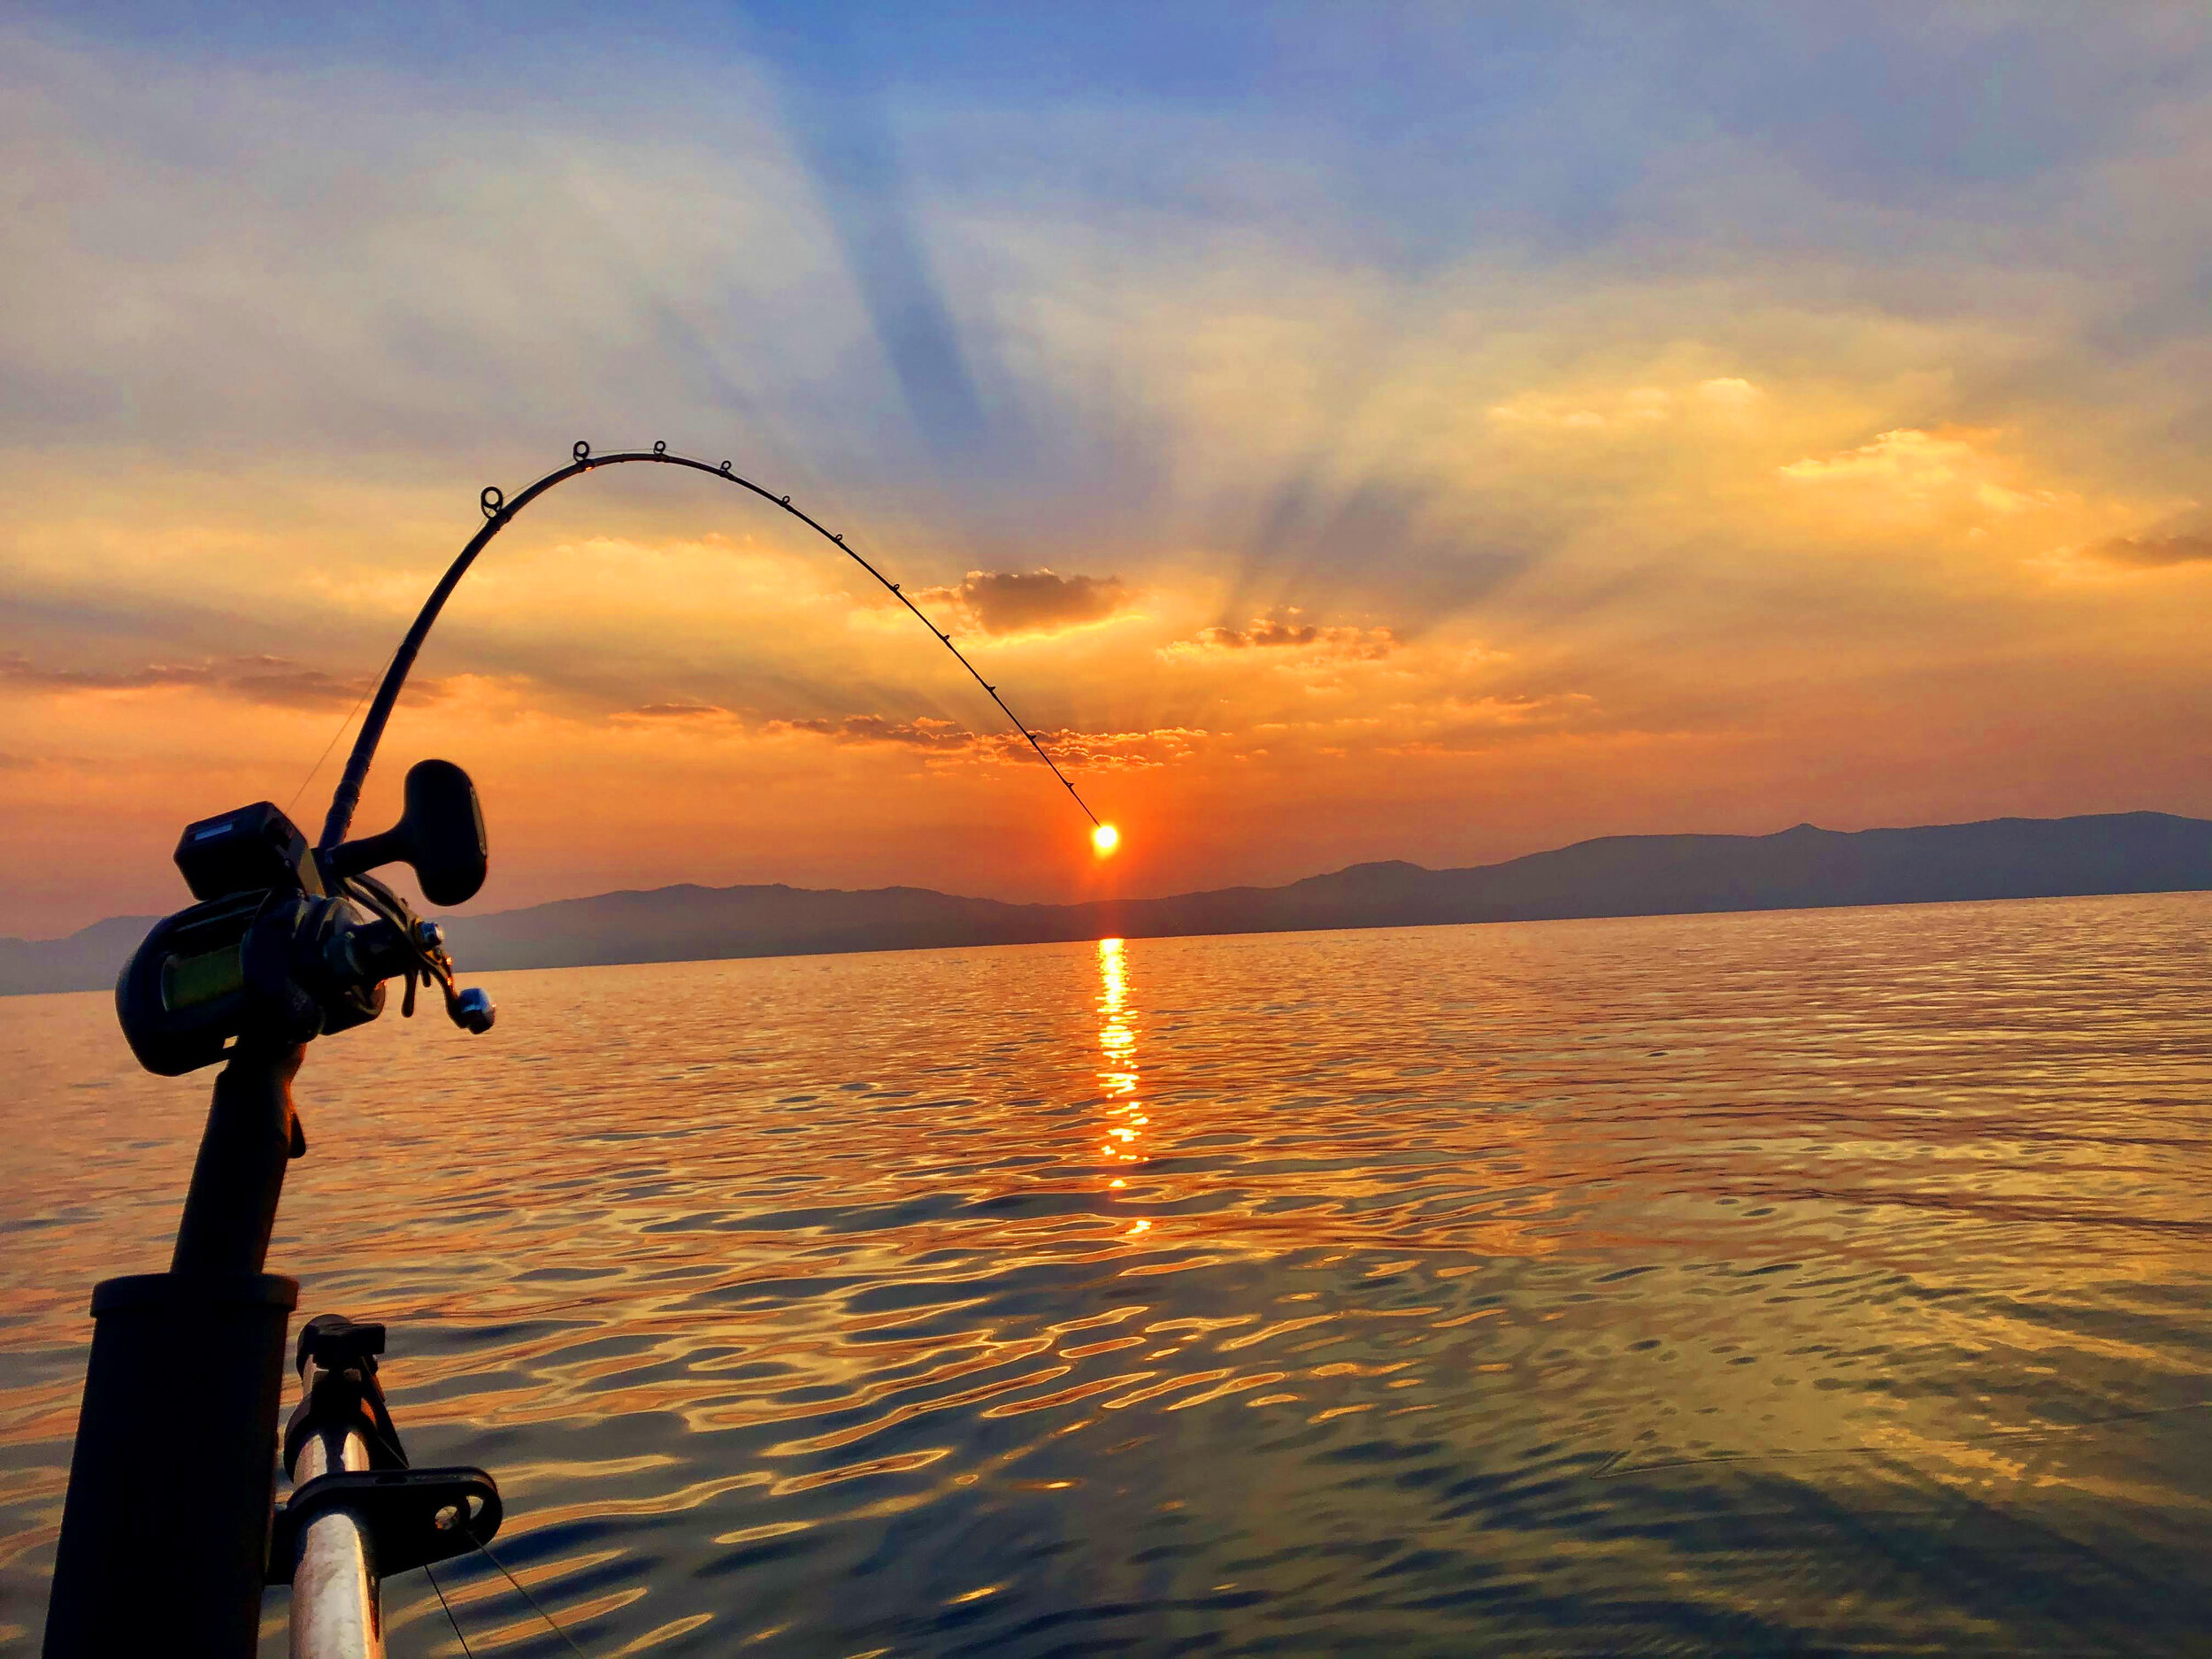 Guided Lake Tahoe Fishing & Cruising